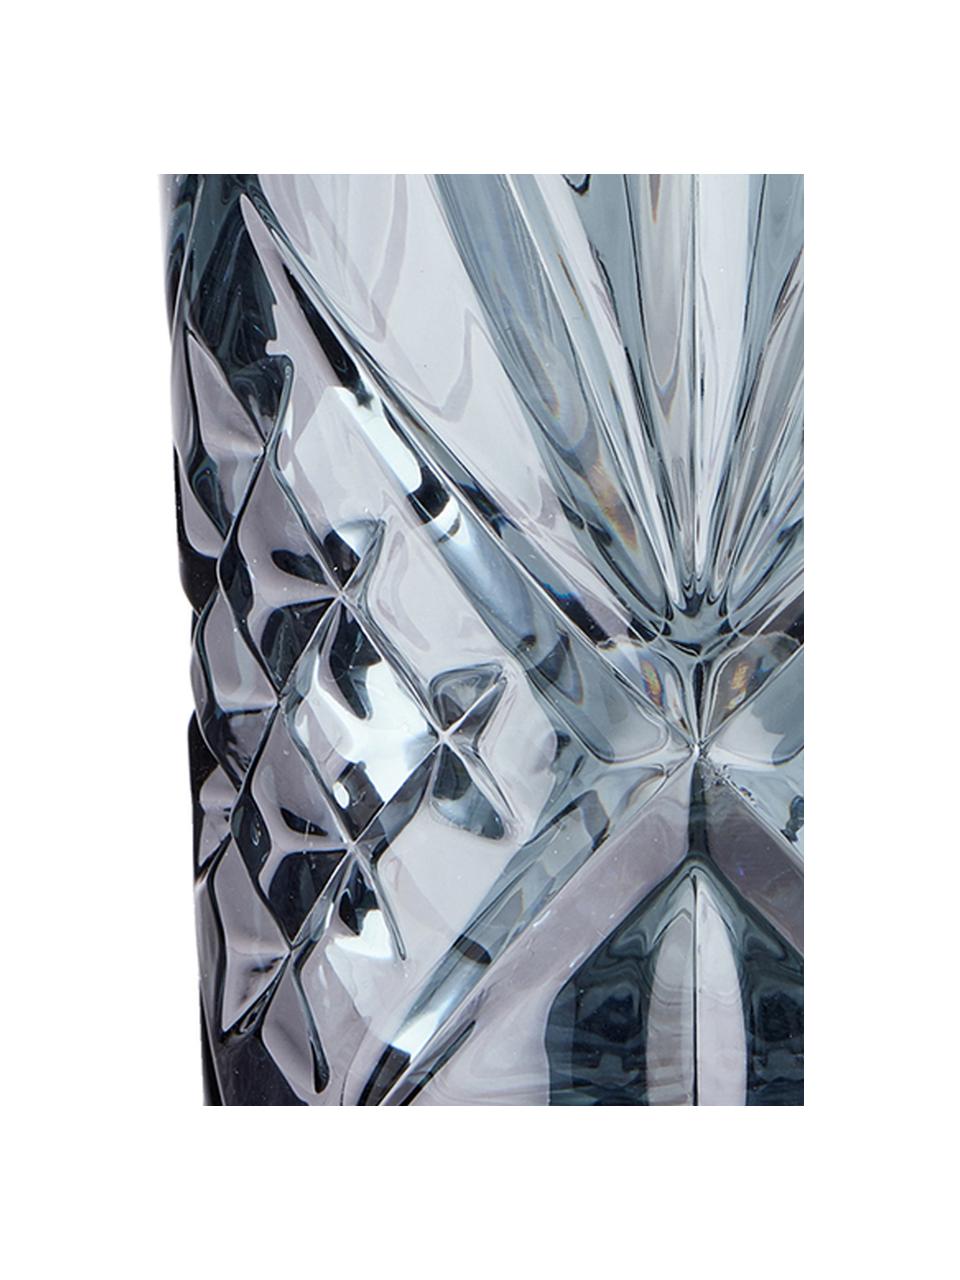 Bicchiere long drink in cristallo Crystal Club 4 pz, Vetro, Grigio, Ø 8 x Alt. 14 cm